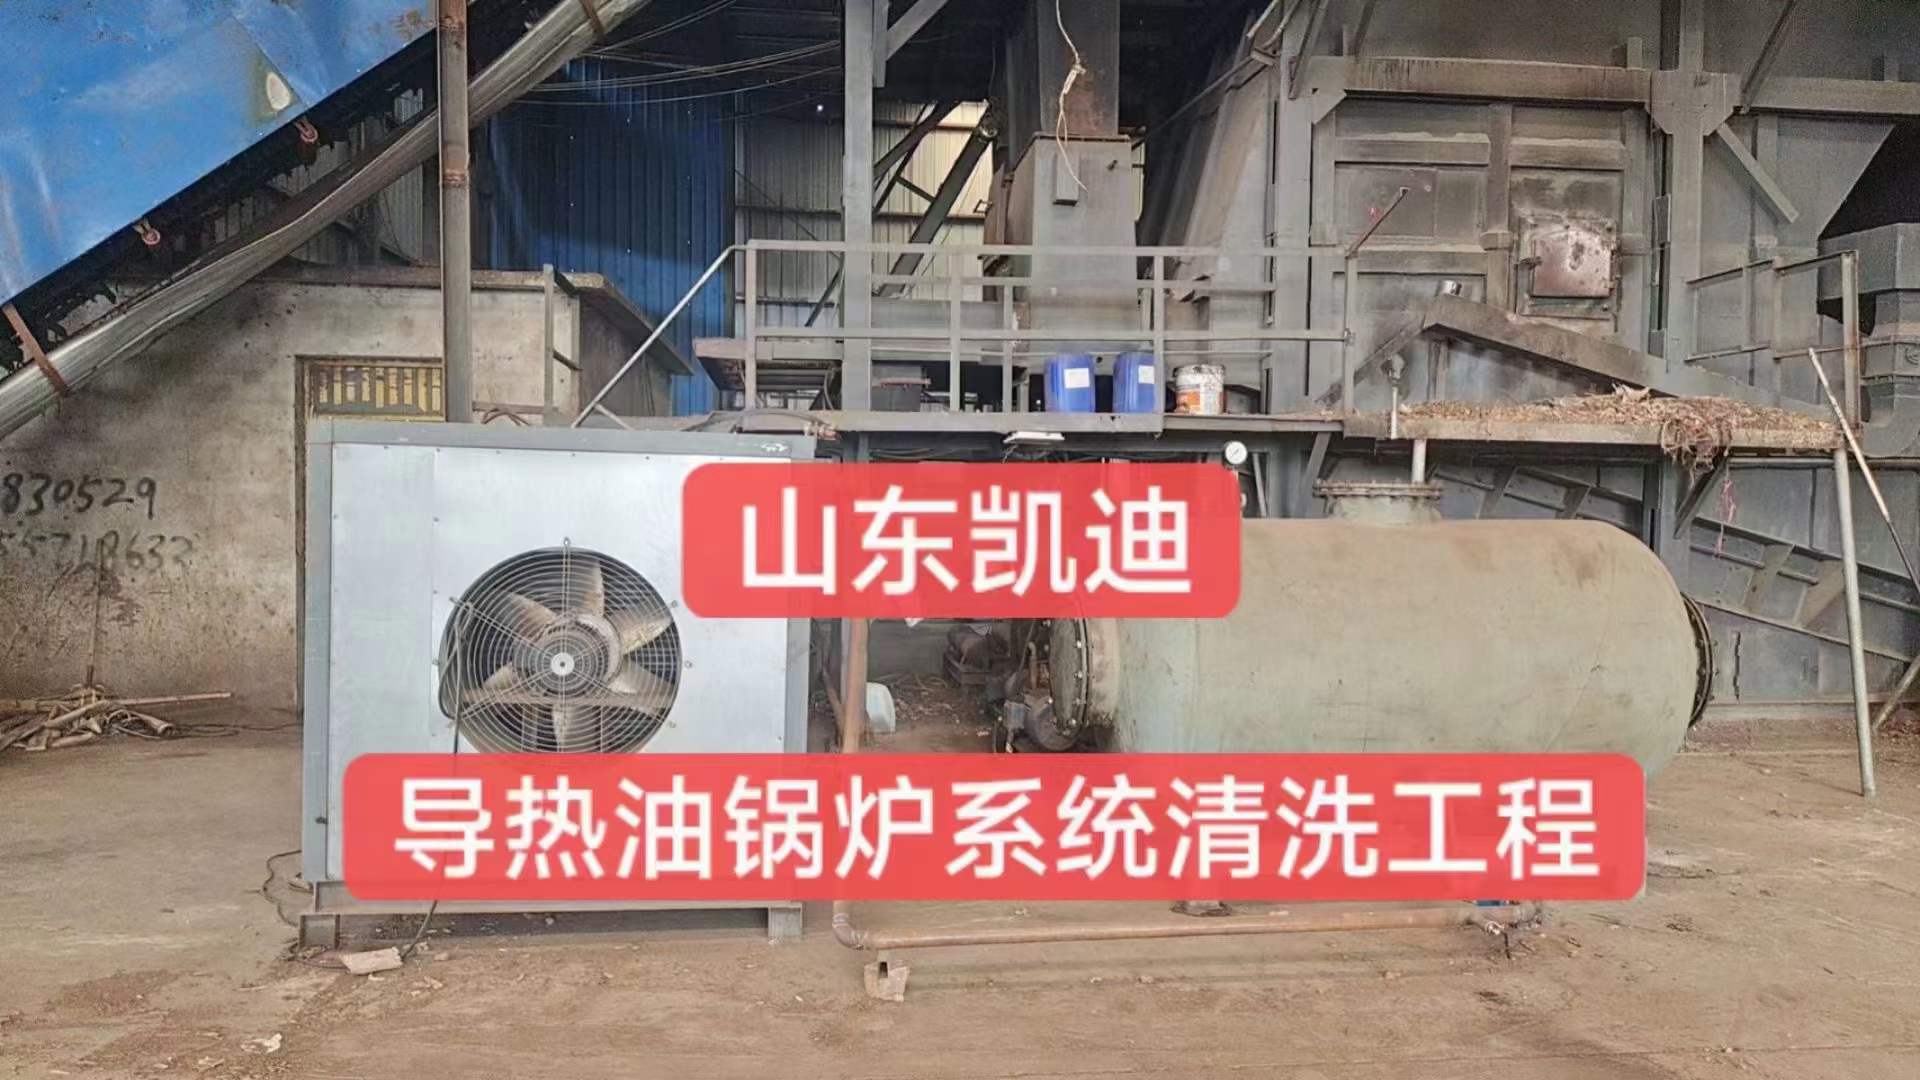 2023年9月7日安徽木业公司导热油锅炉系统整体清洗过滤工程结束